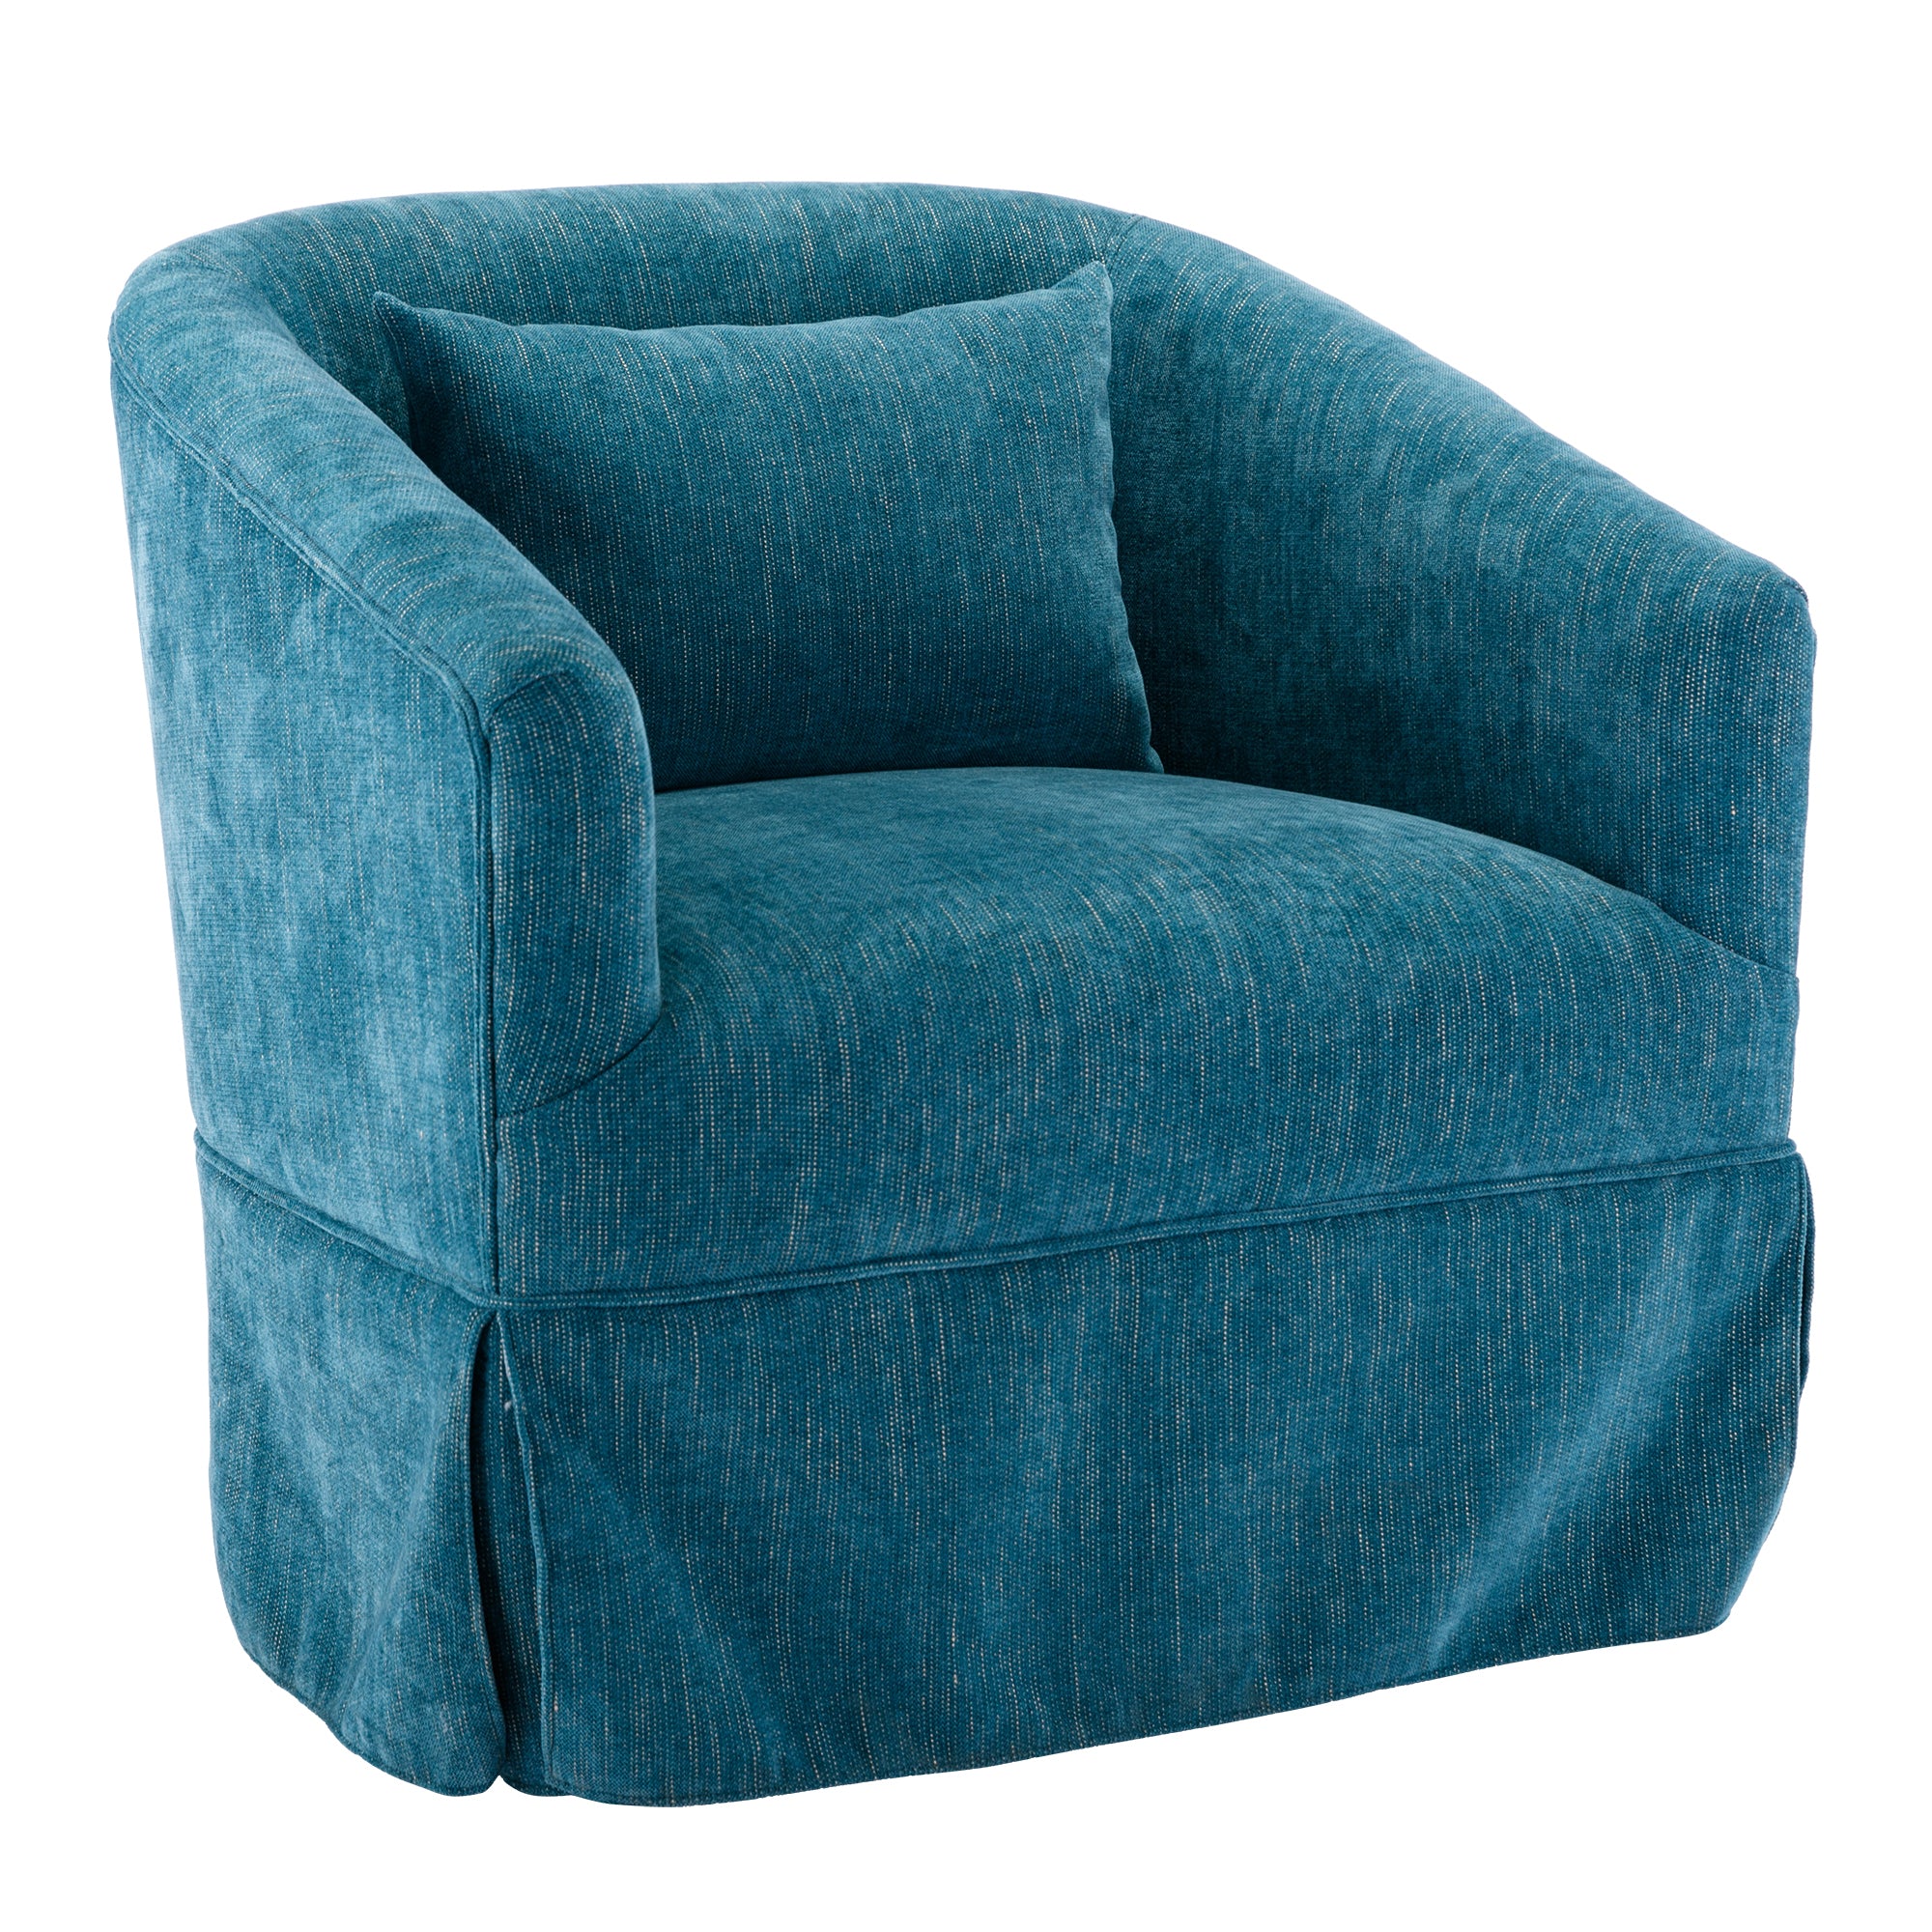 360 degree Swivel Accent Armchair Linen Blend Green green-foam-upholstered